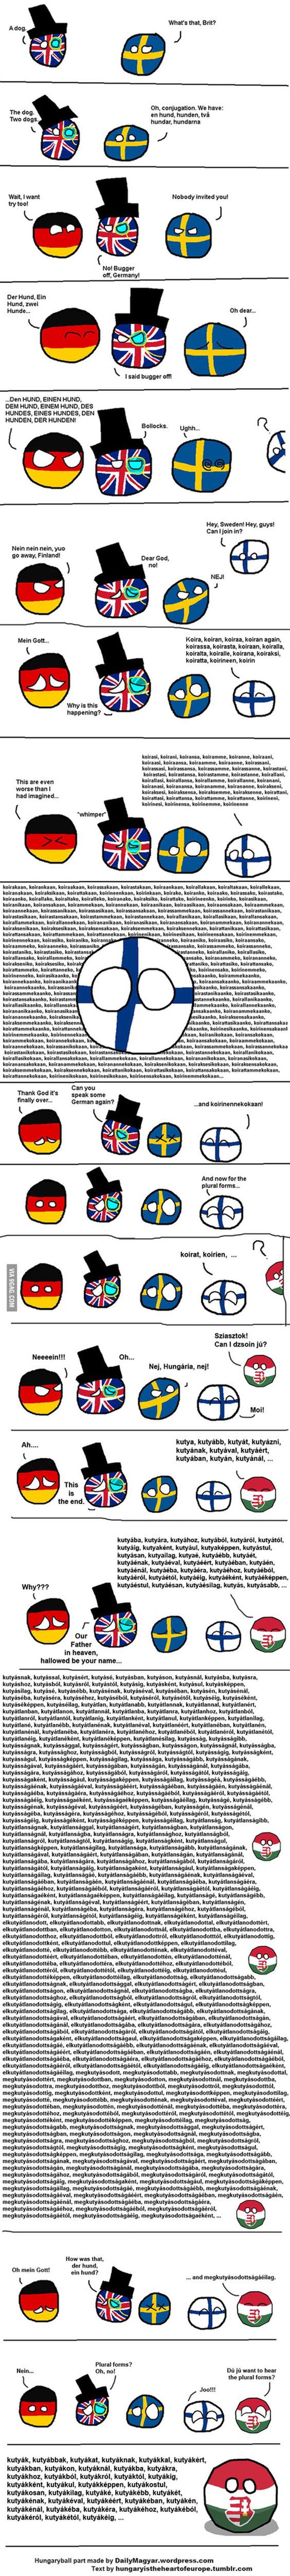 Du glaubst, Deutsch sei kompliziert? Im Ungarischen gibt es satte 27 Fälle (oder mehr).